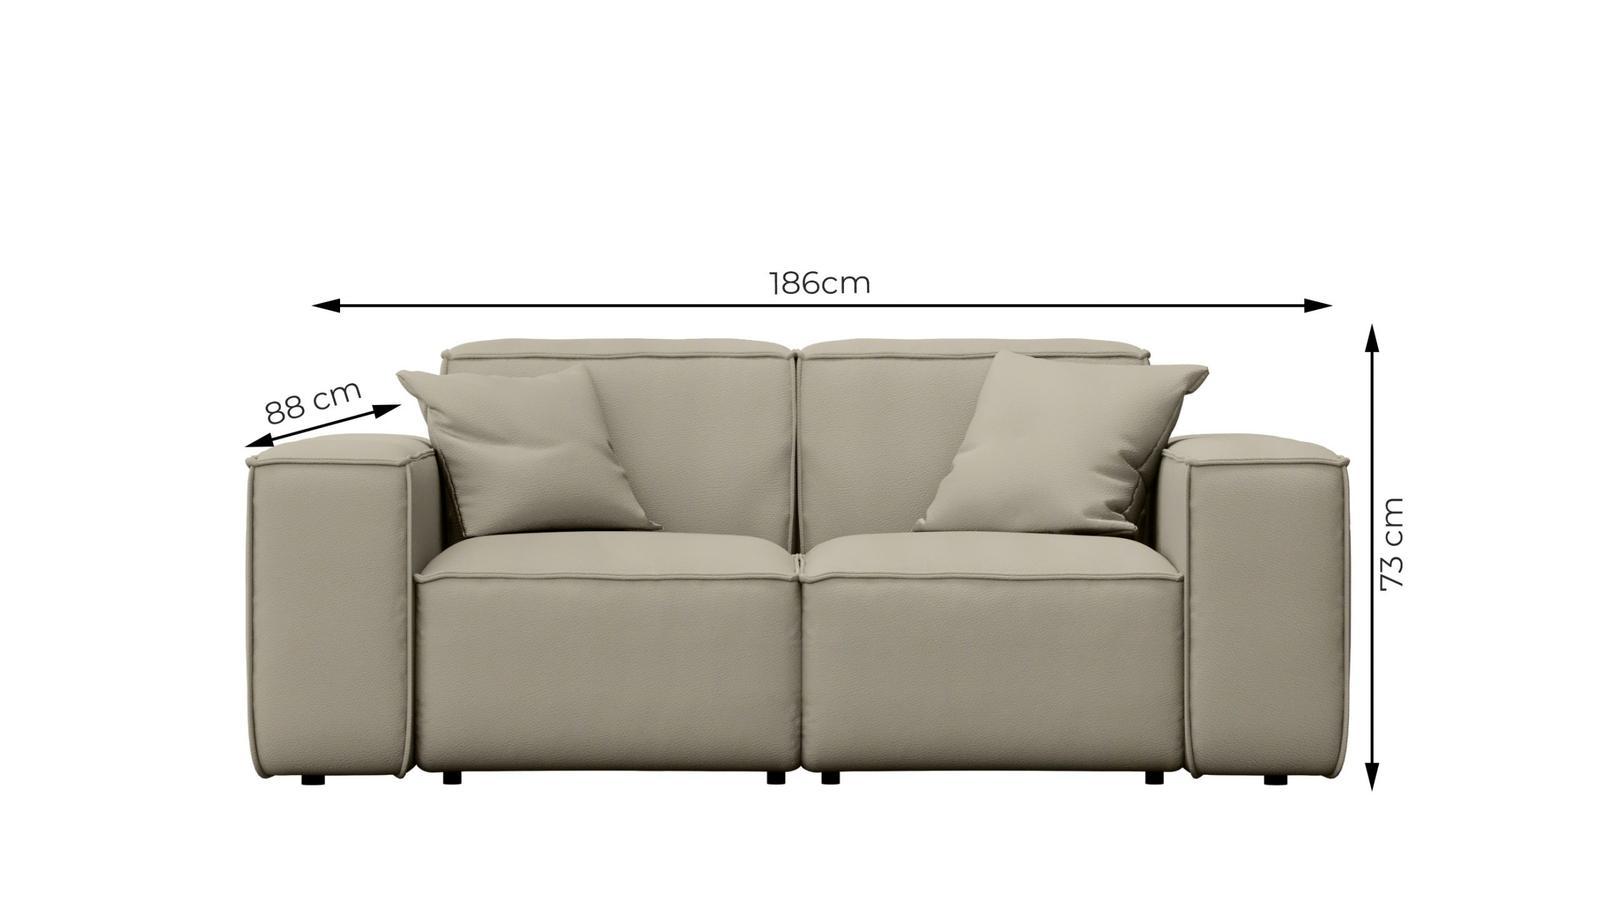 Sofa ogrodowa MALIBU  186x73x88 cm wodoodporna UV 2-os + 2 poduszki do ogrodu jasnozielona nr. 3